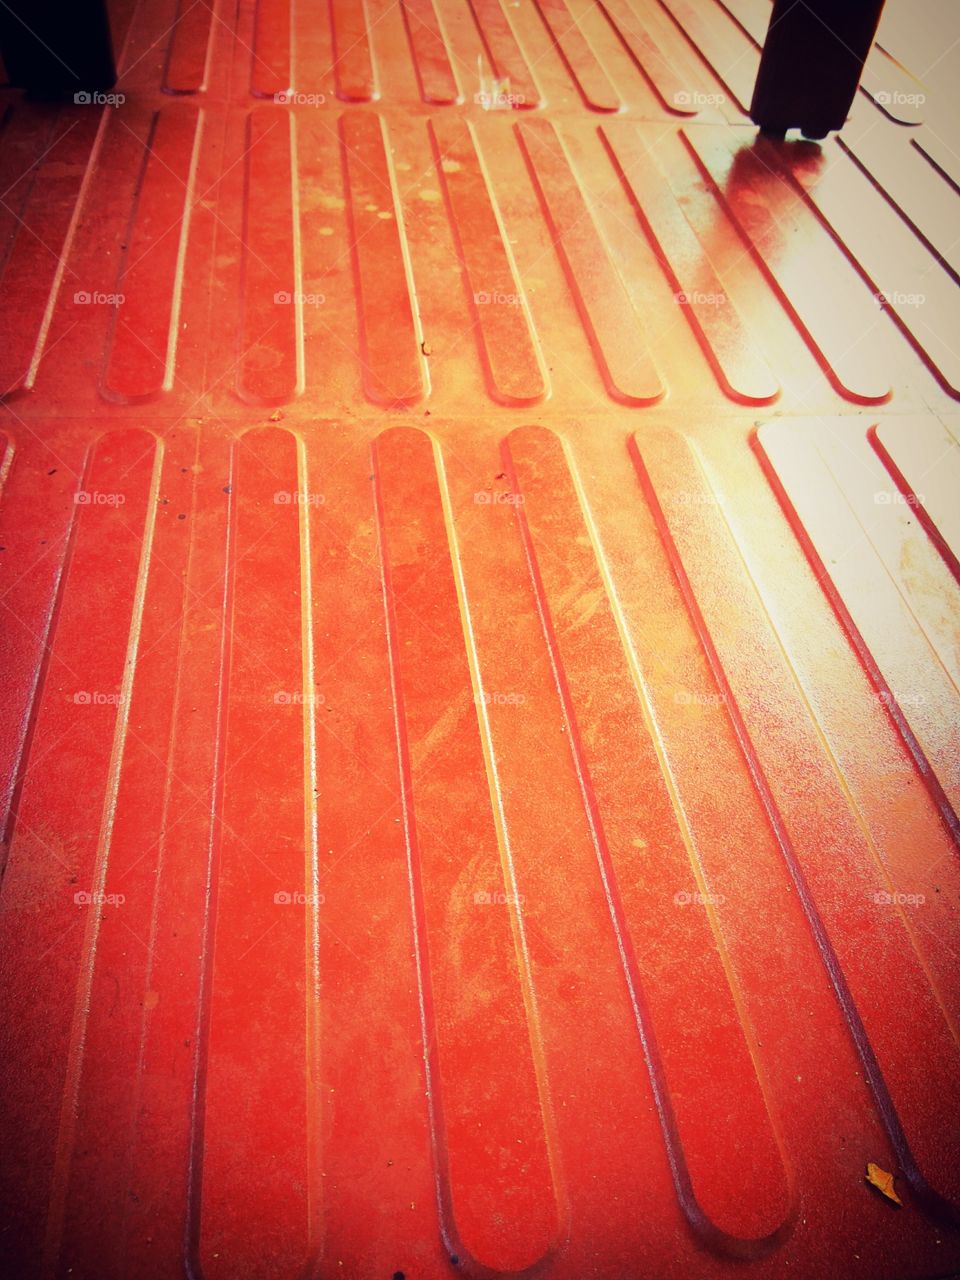 Floor red tiles